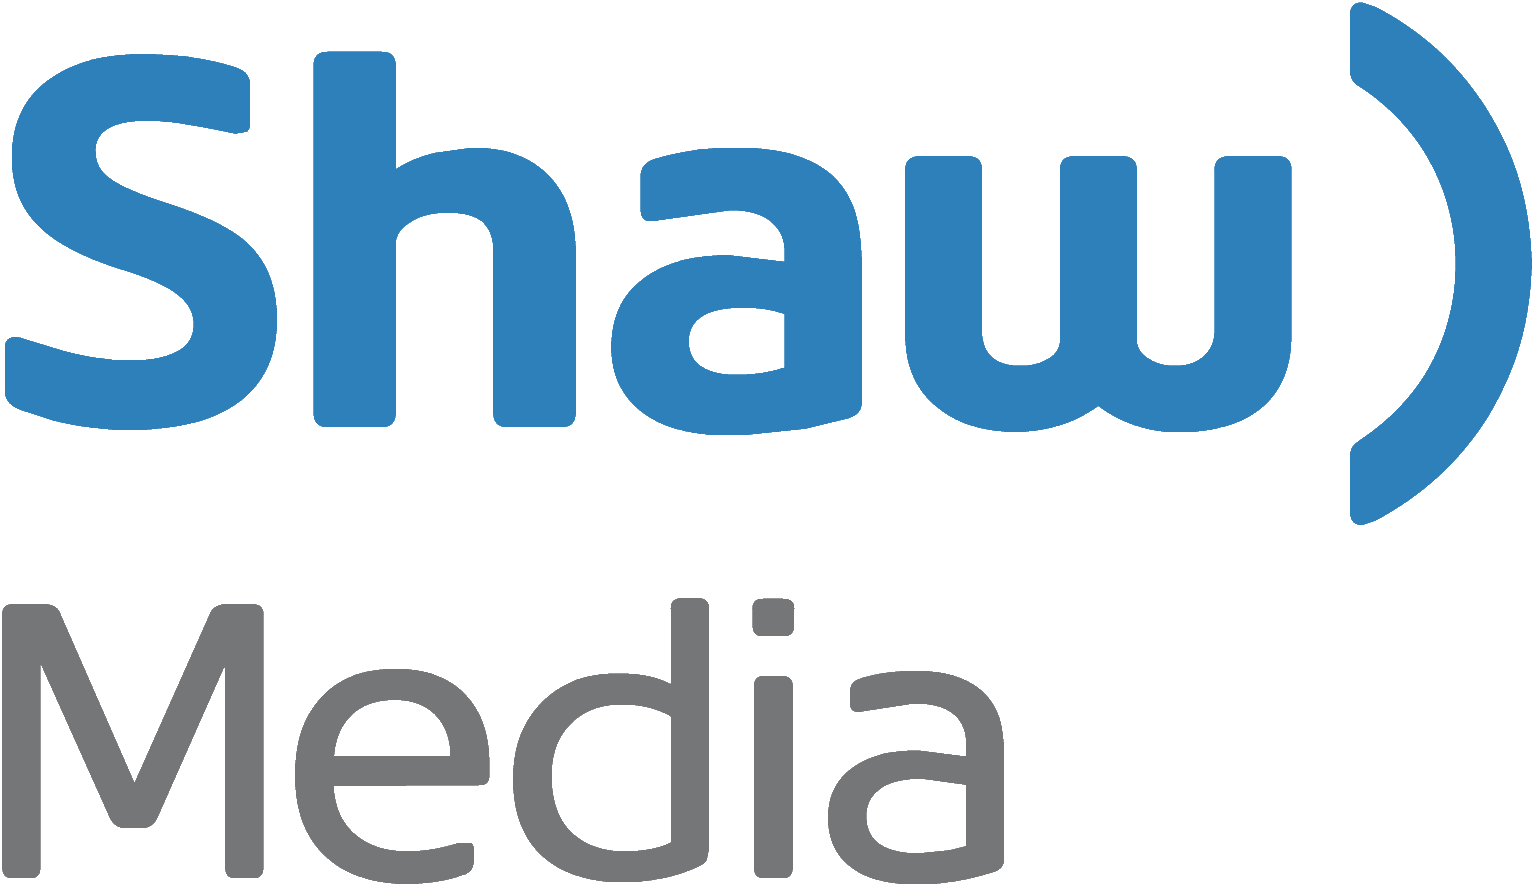 Shaw Logo - Shaw Media | Logopedia | FANDOM powered by Wikia